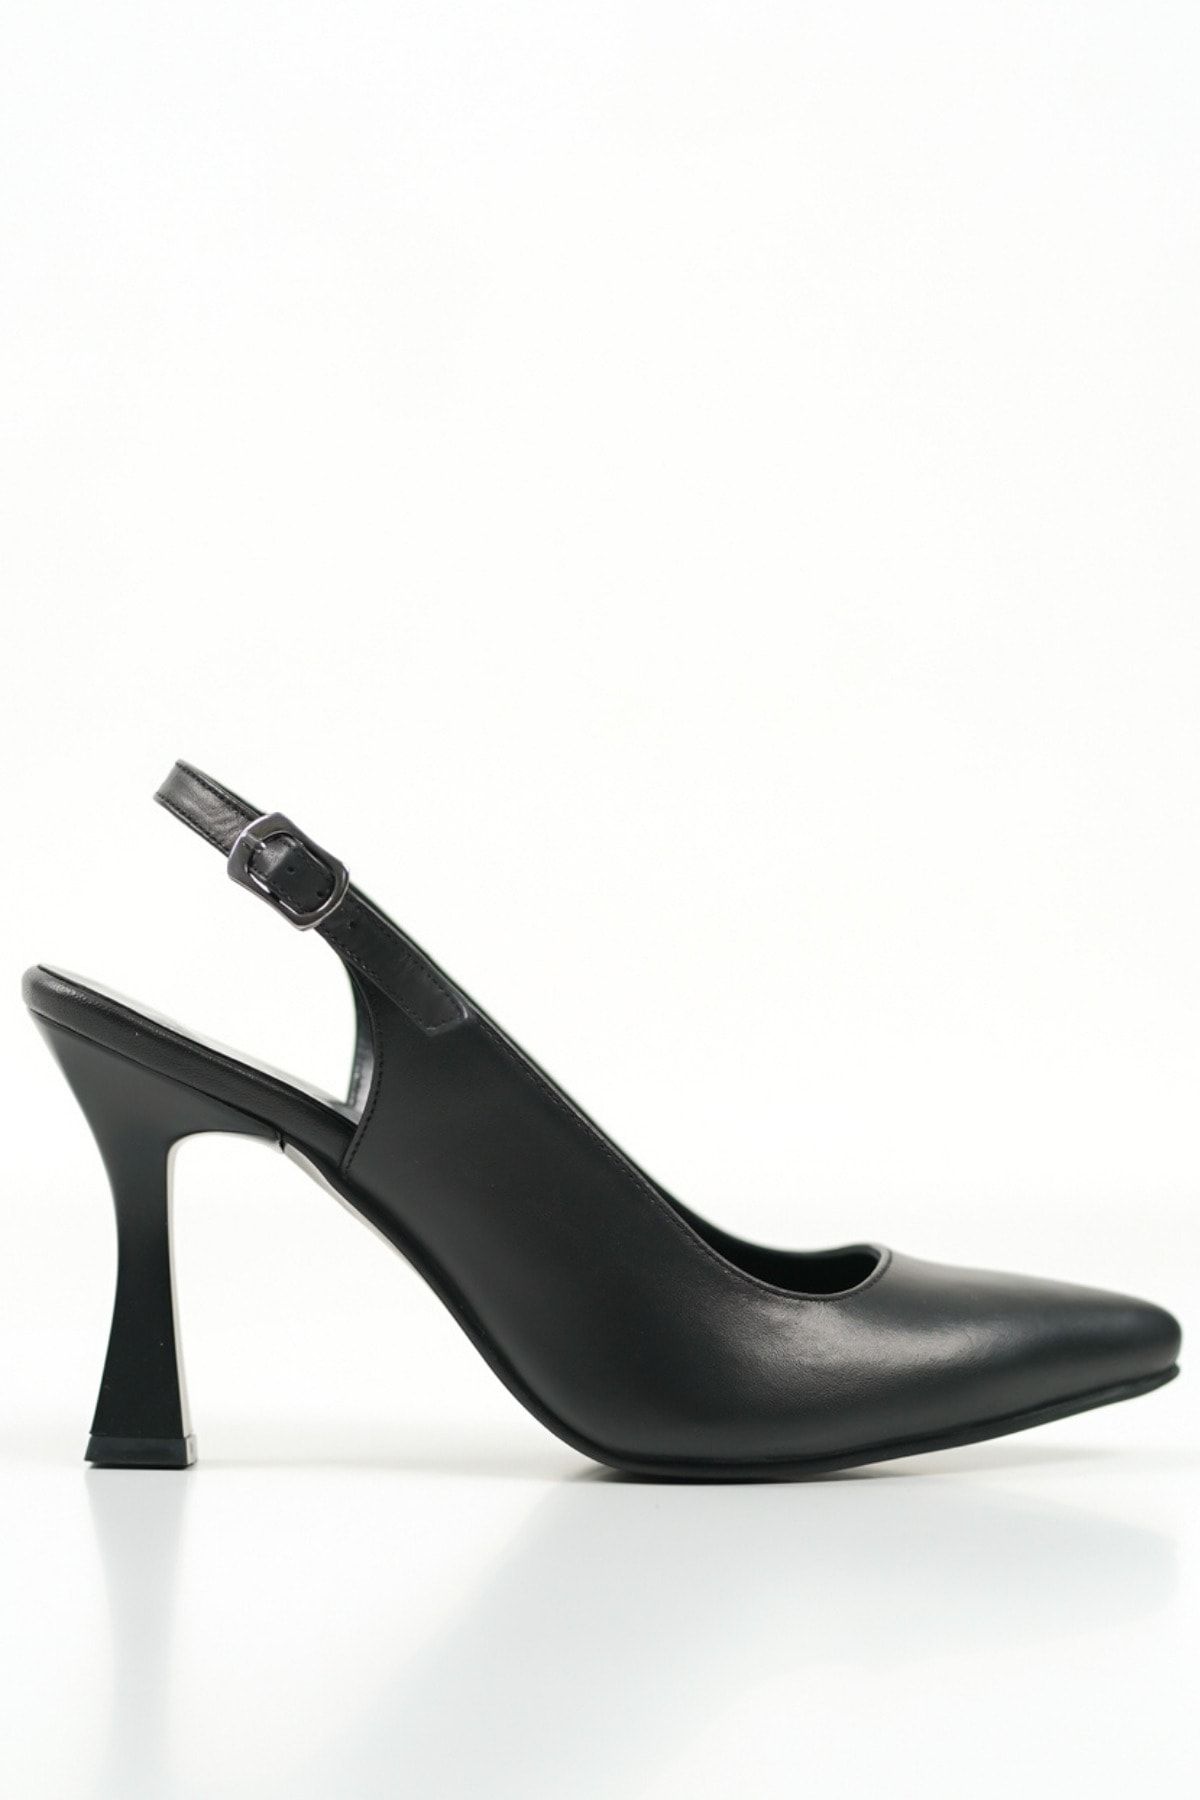 SAYL Siyah Stiletto Hakiki Deri Arkası Açık Sivri Burun Stiletto Kadın Topuklu Ayakkabı